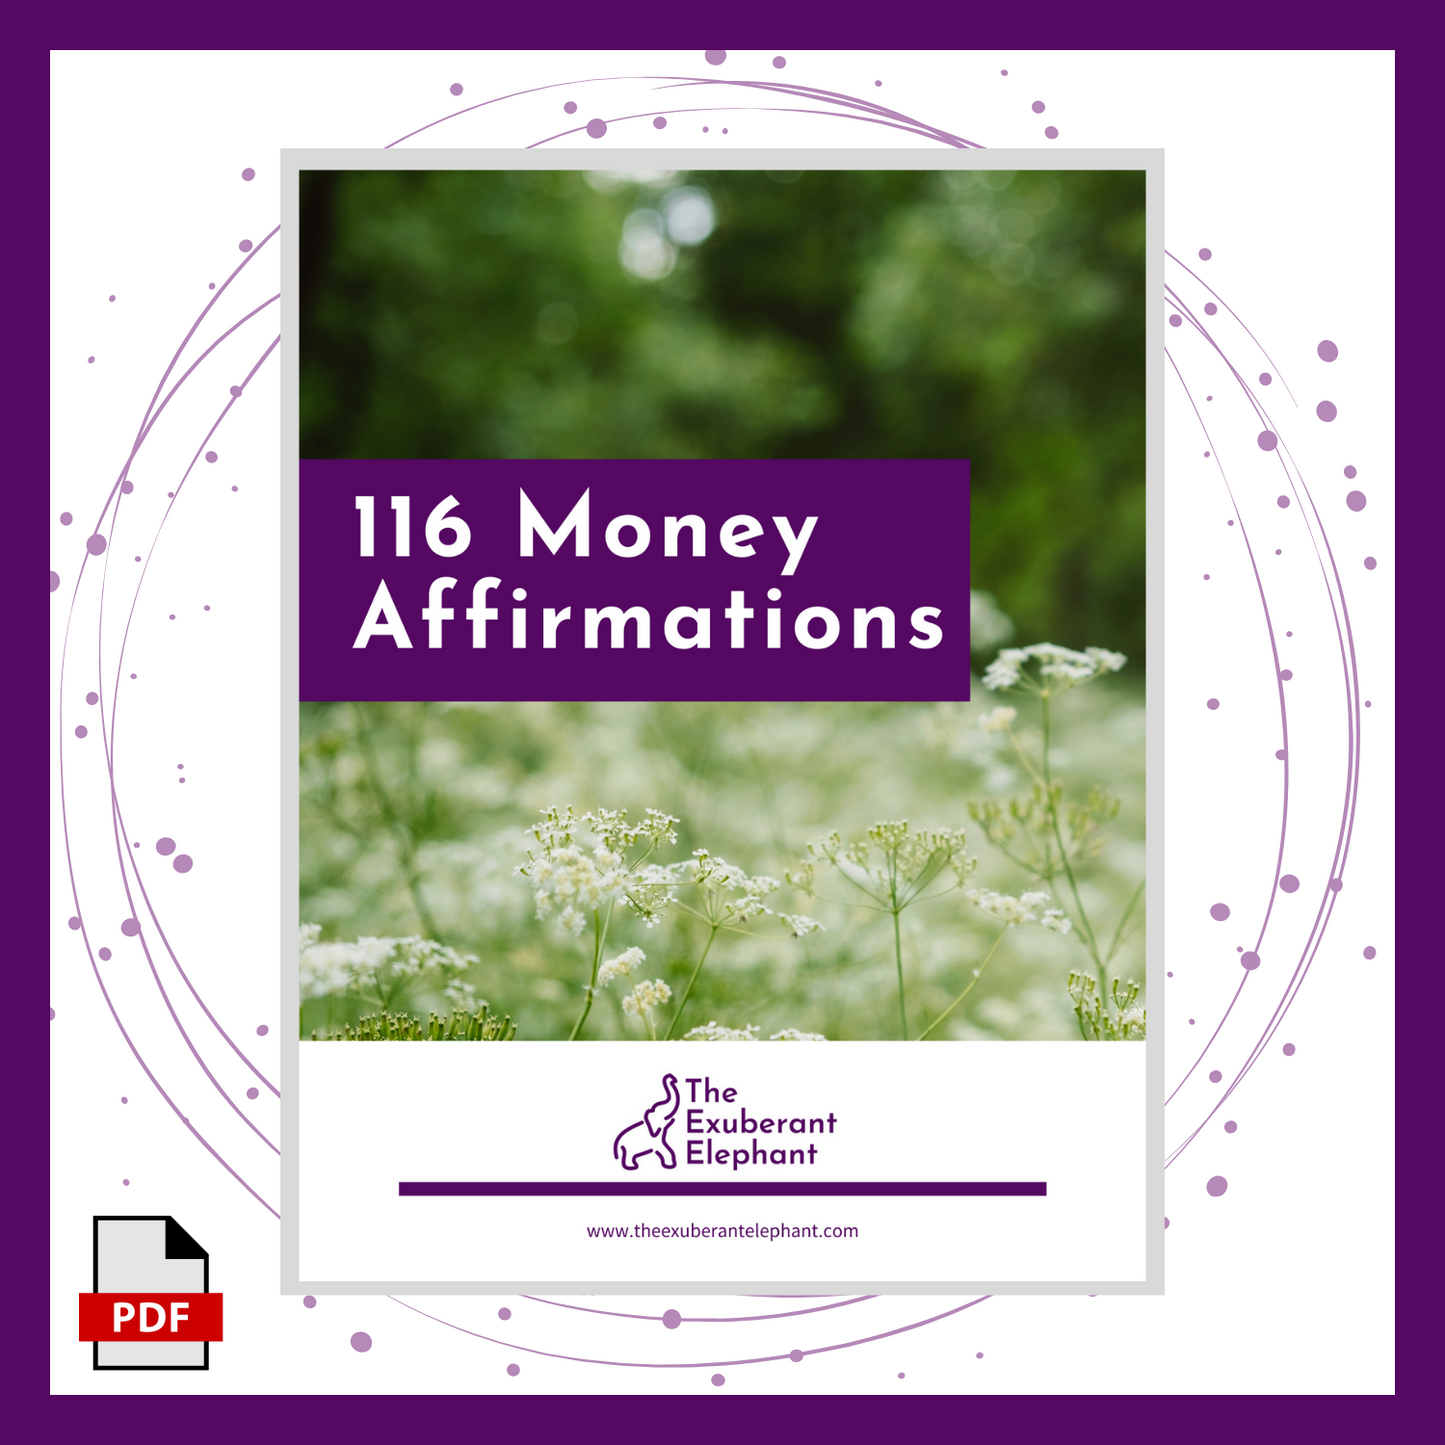 116 Money Affirmations